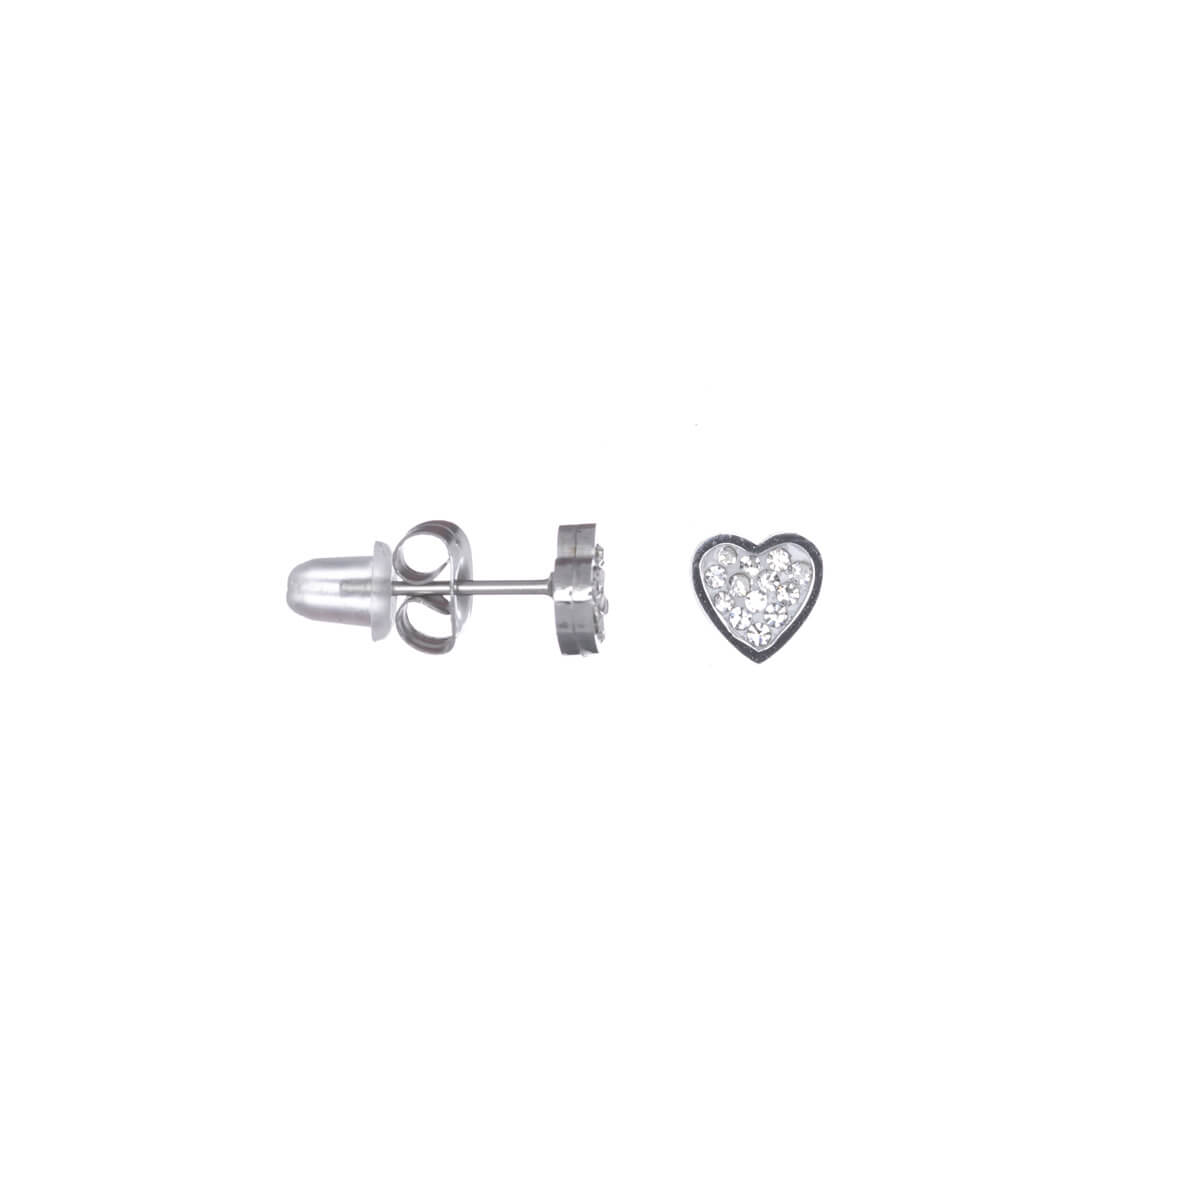 Steel heart earrings 7mm (steel 316L)